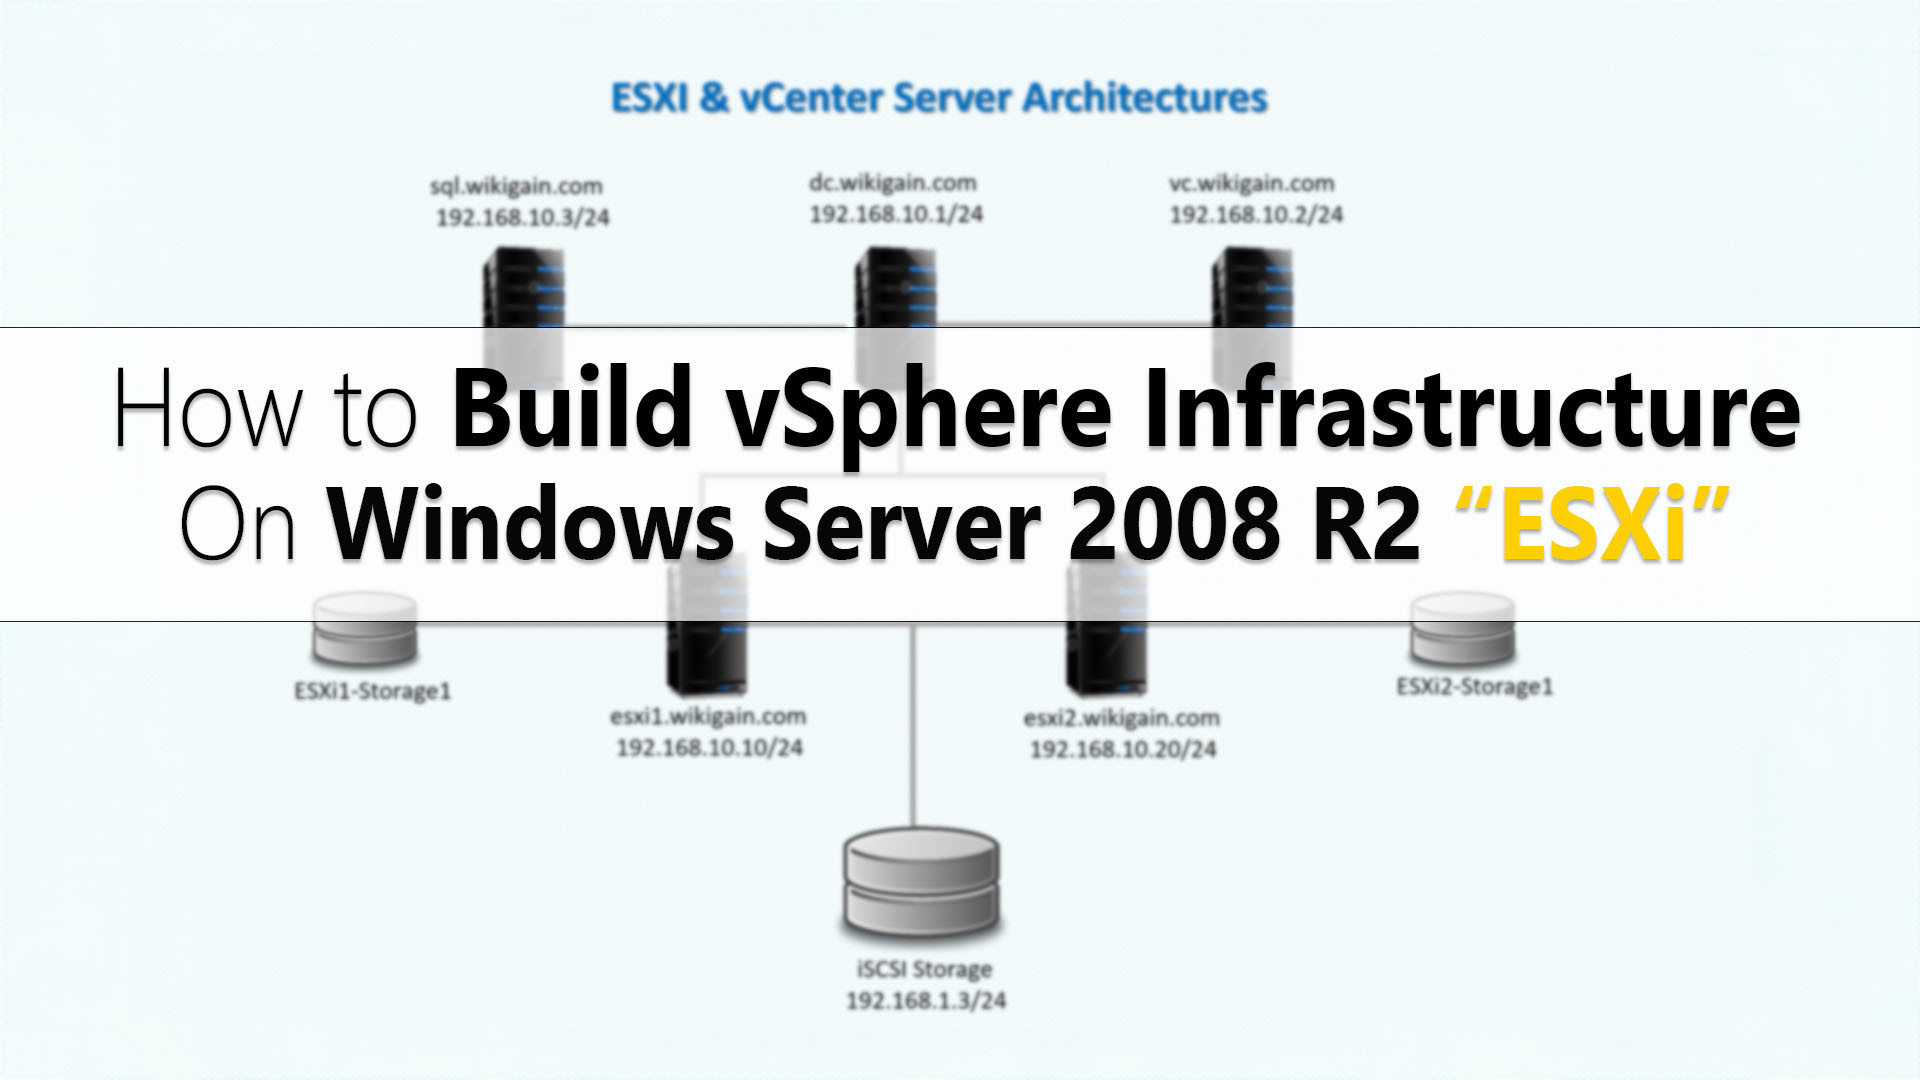 vmware workstation for windows server 2008 r2 free download